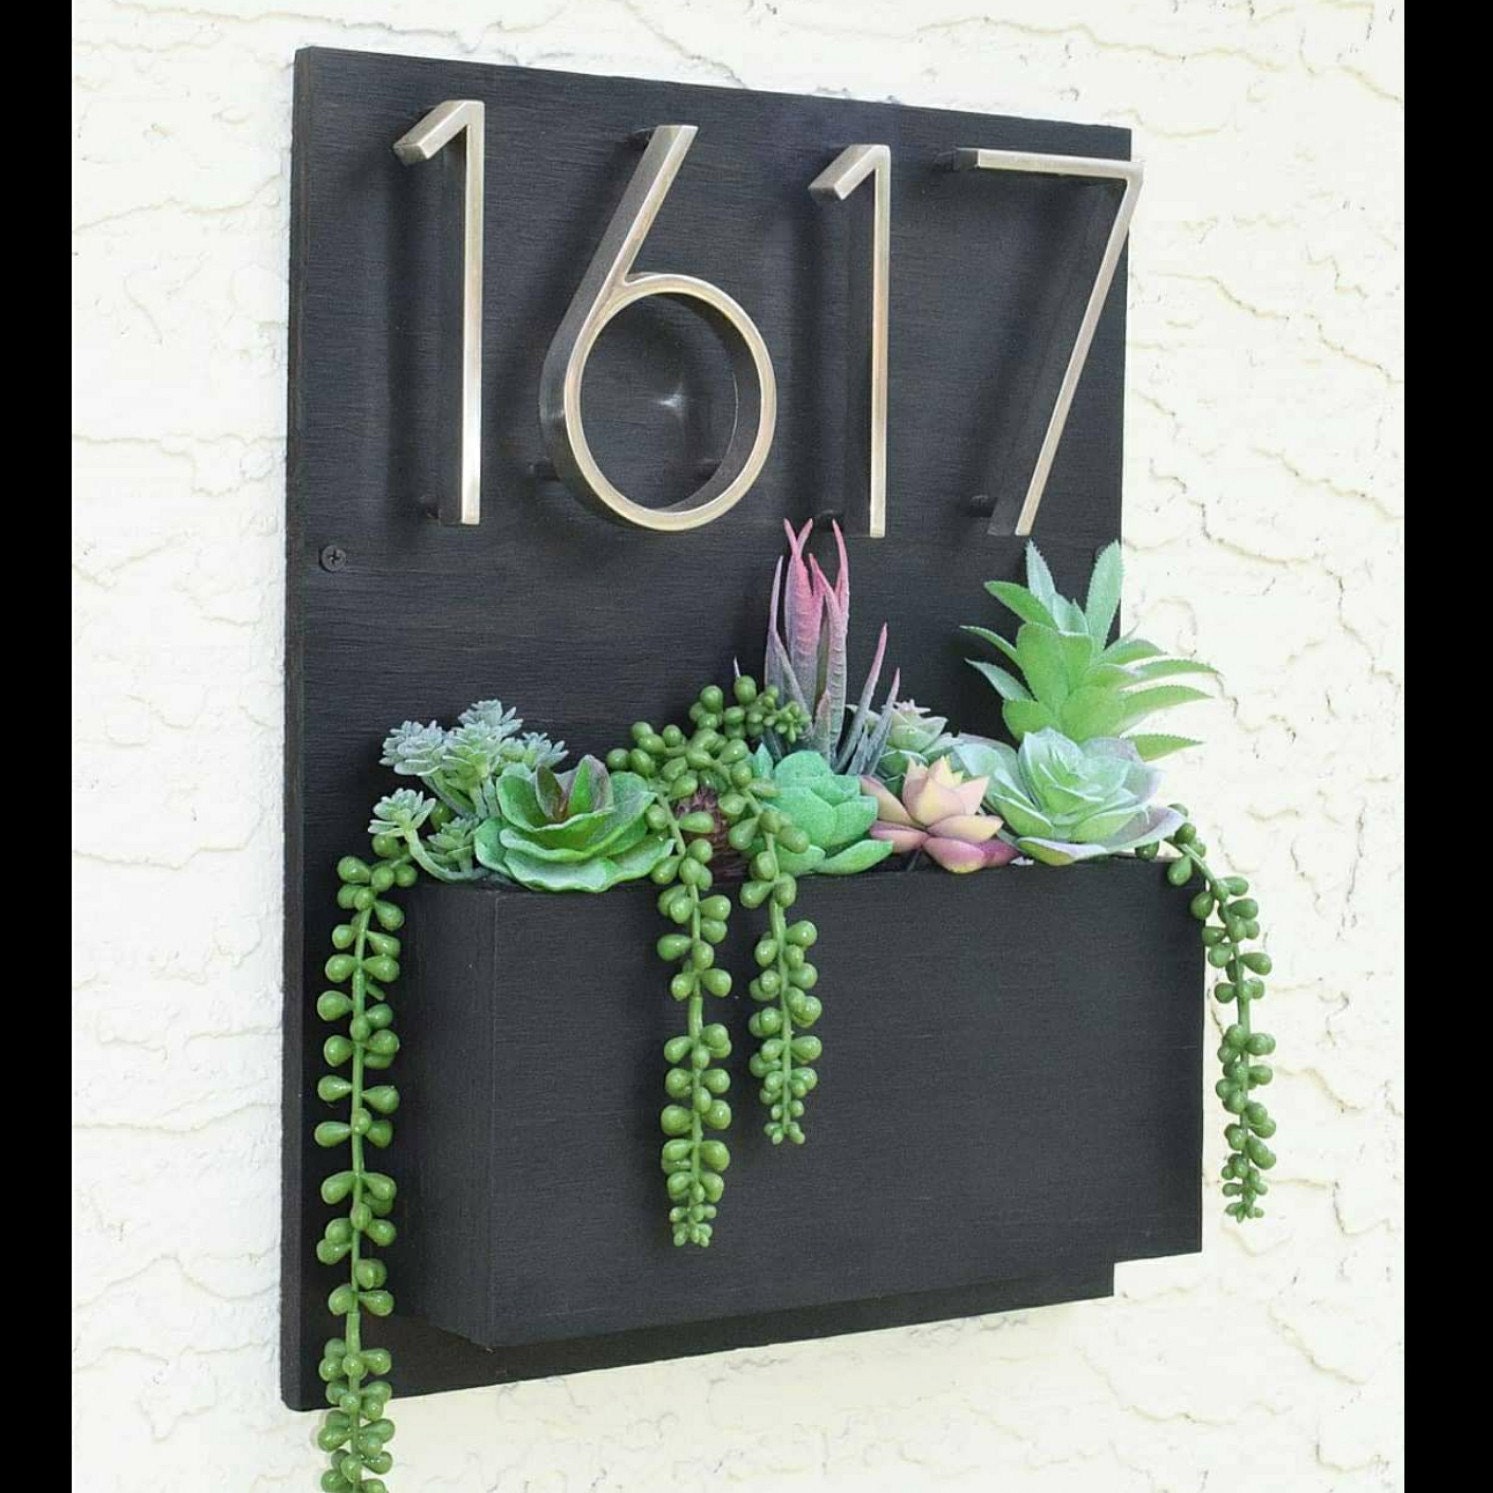 Plaque numéro maison avec jardinière intégrée pour végétaliser votre  panneau d'adresse